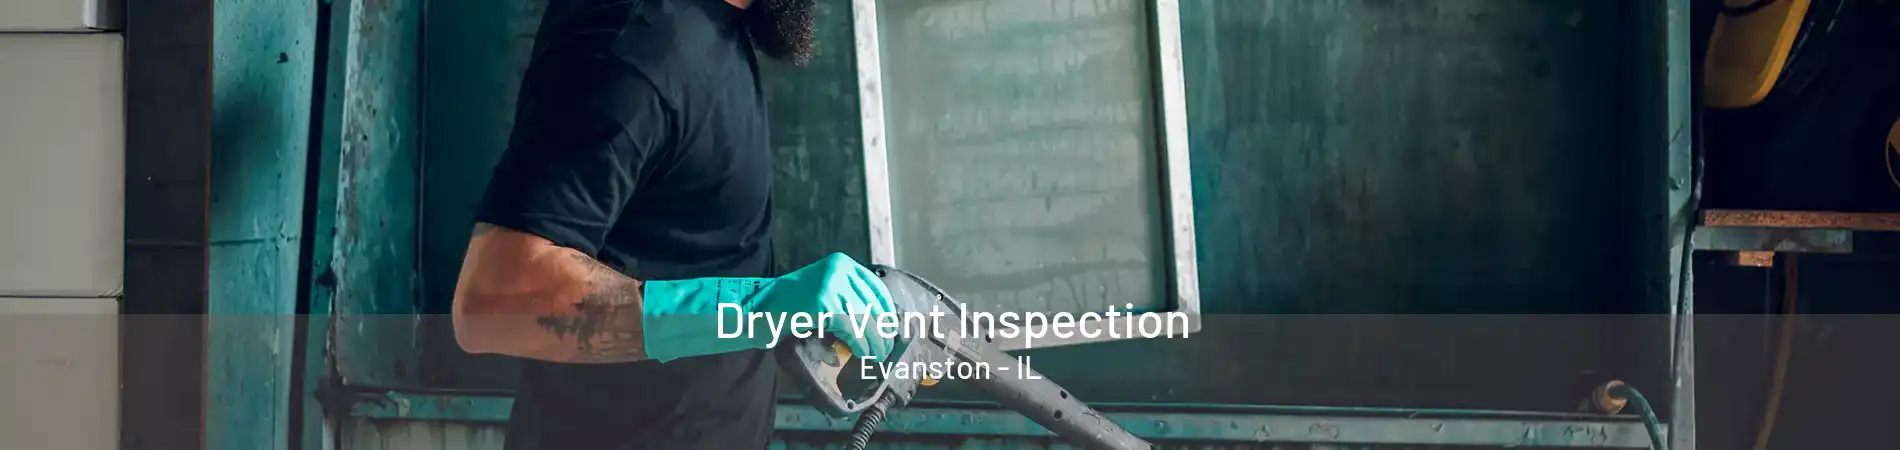 Dryer Vent Inspection Evanston - IL